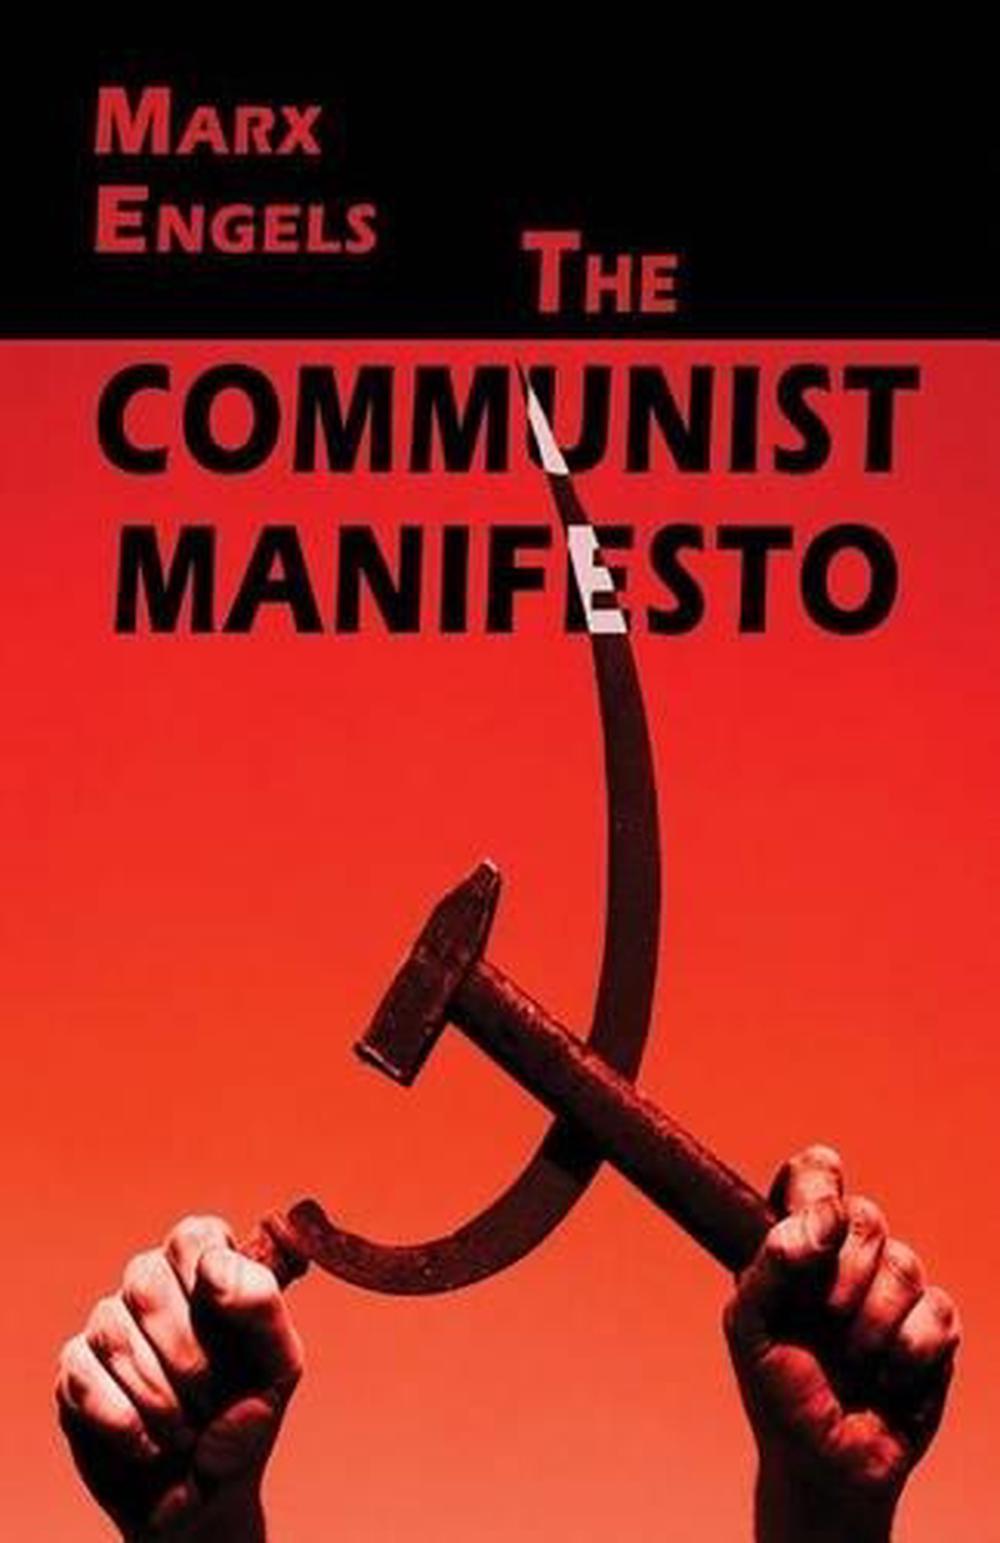 the communist manifesto by karl marx